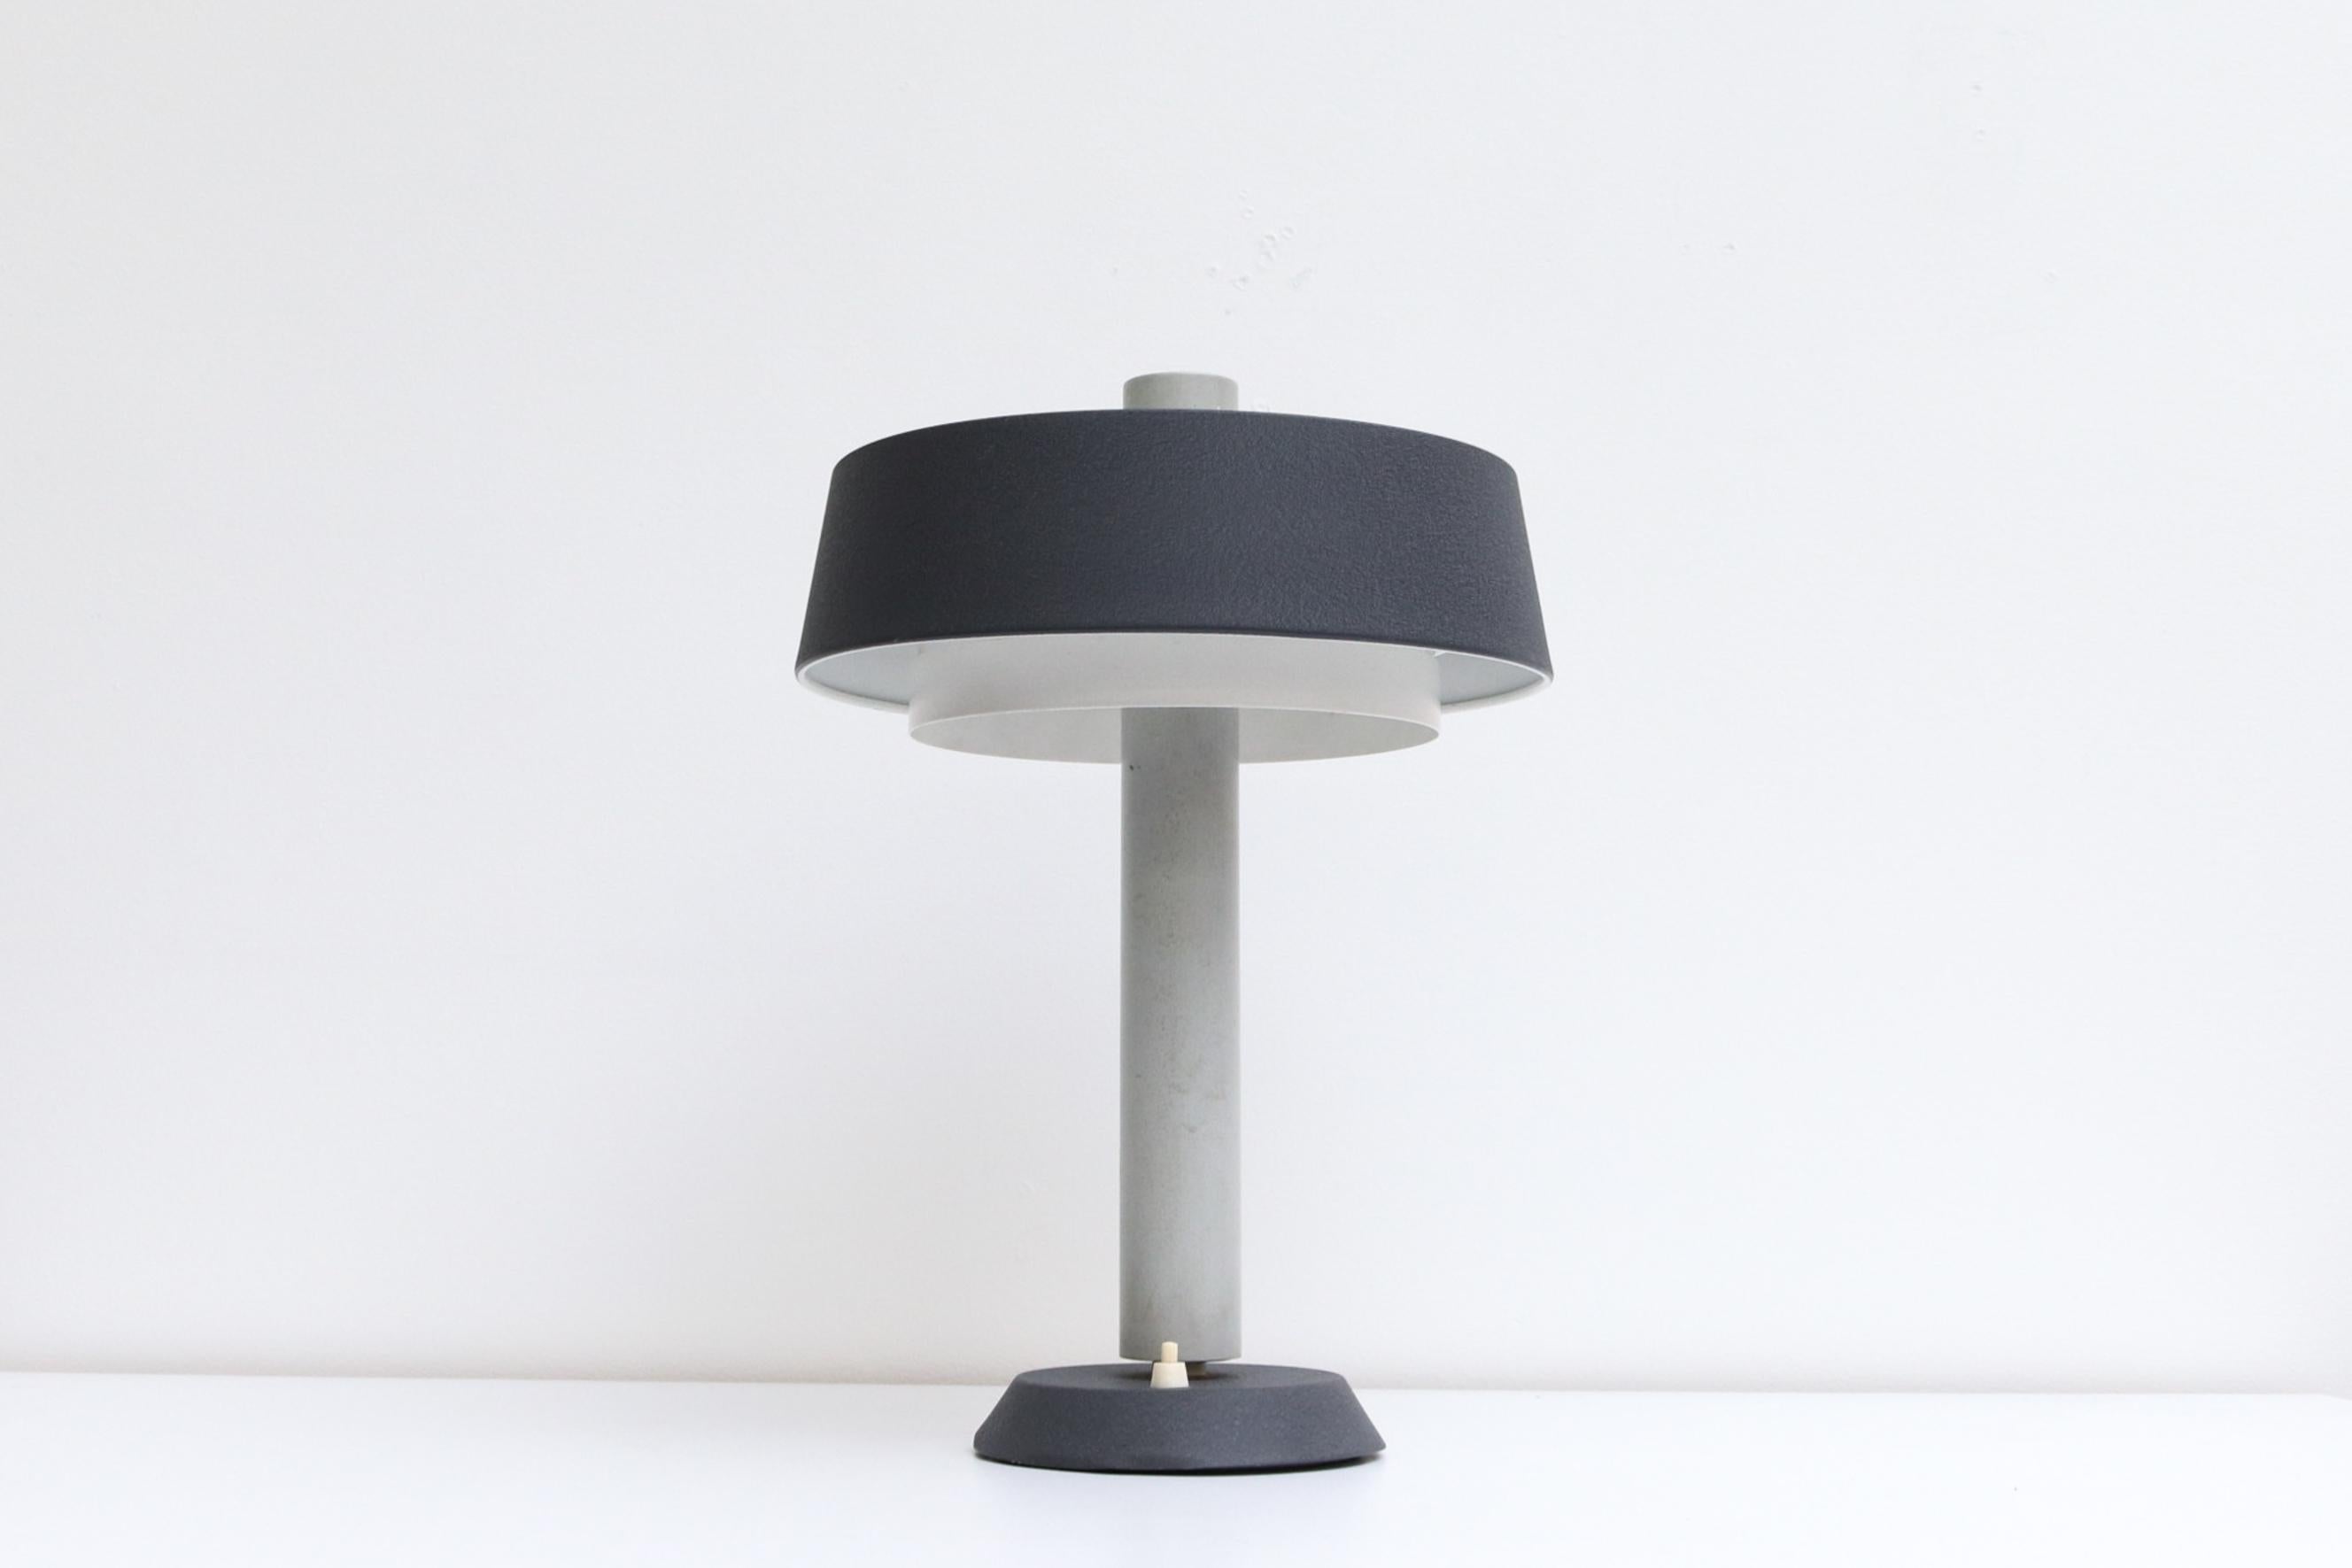 Lampe de table Hiemstra Evolux du milieu du siècle,  conçu dans les années 1960 par Niek Hiemstra. En état original. L'usure est conforme à son âge et à son utilisation. D'autres lampes similaires sont disponibles. Listés séparément.